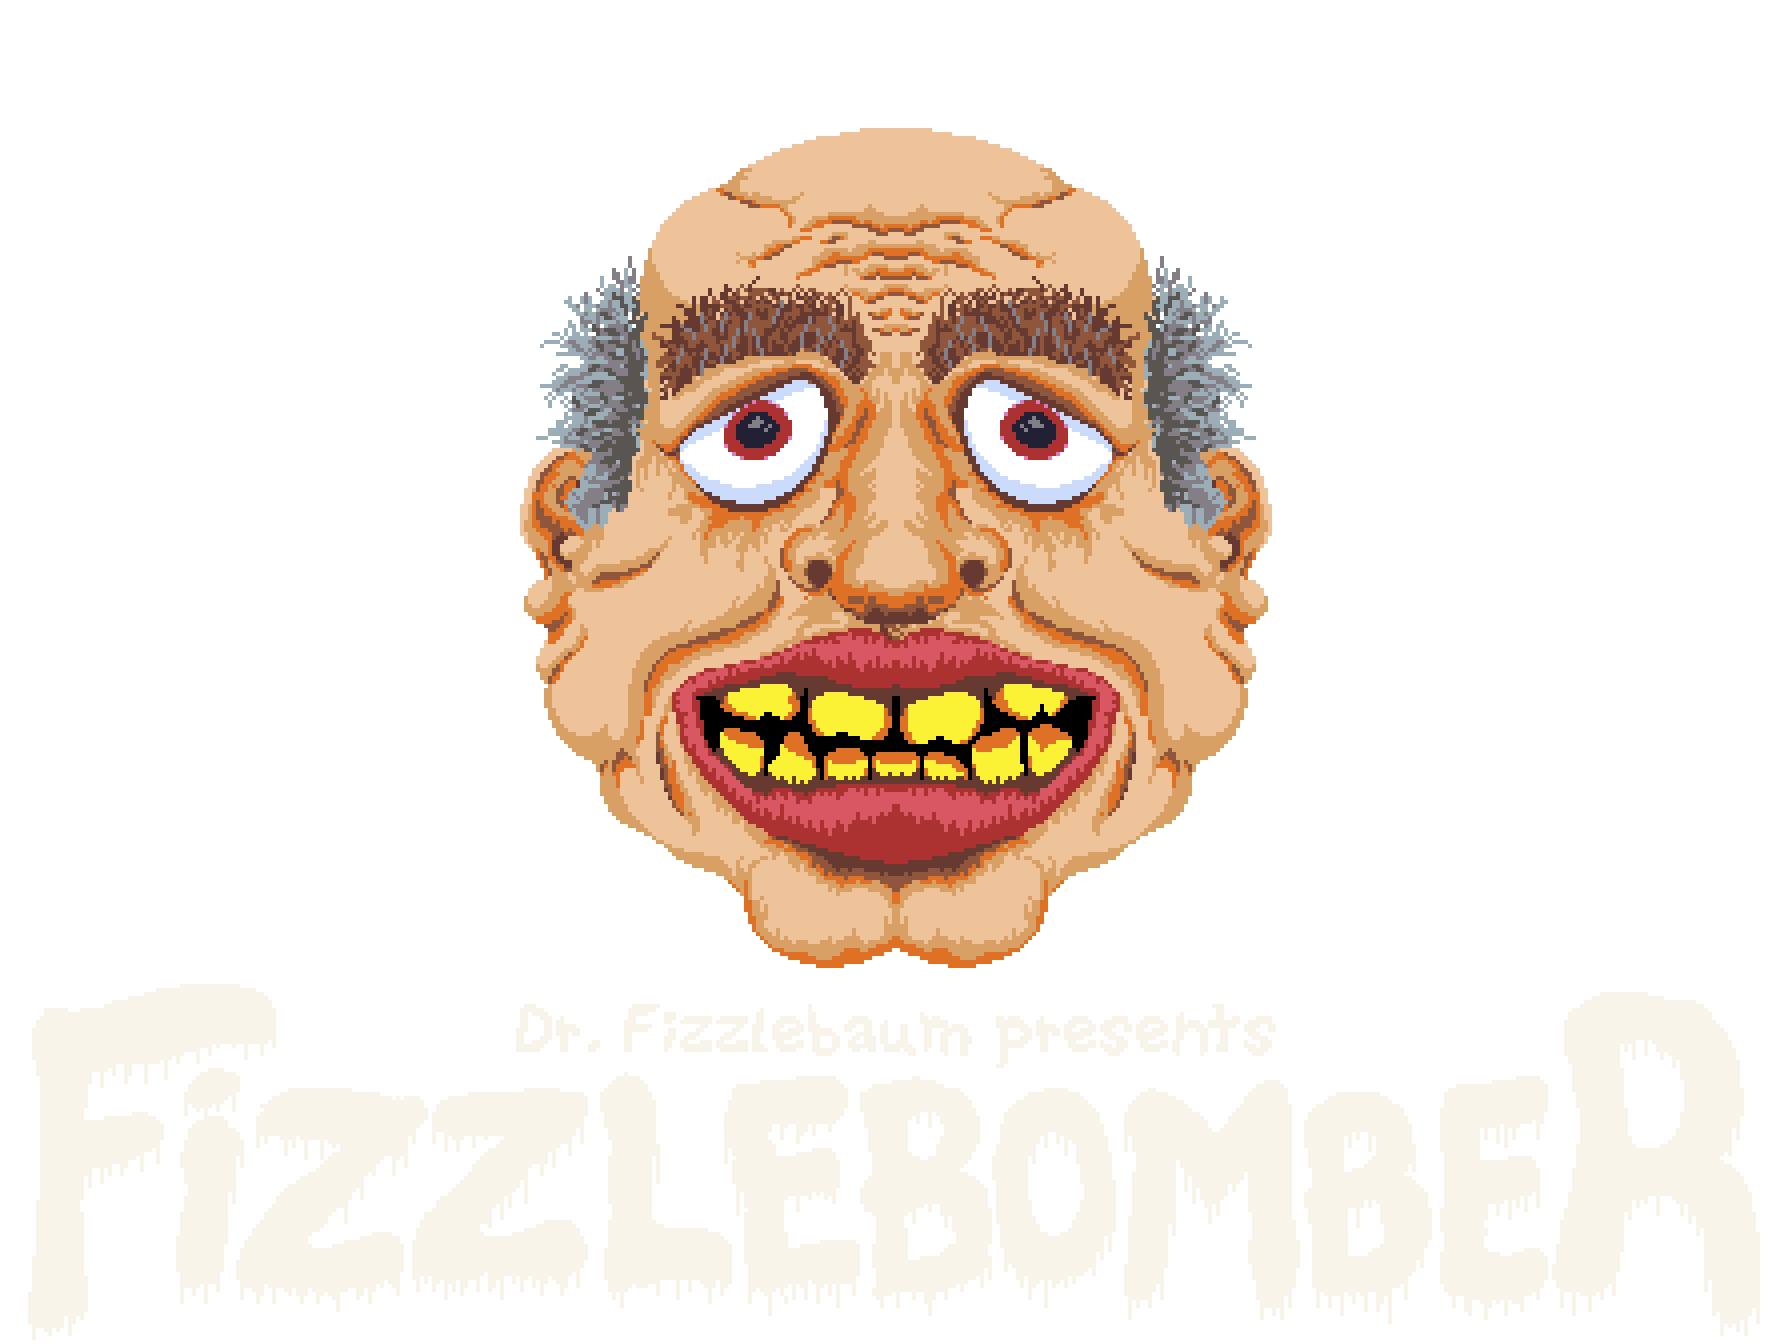 Fizzlebomber